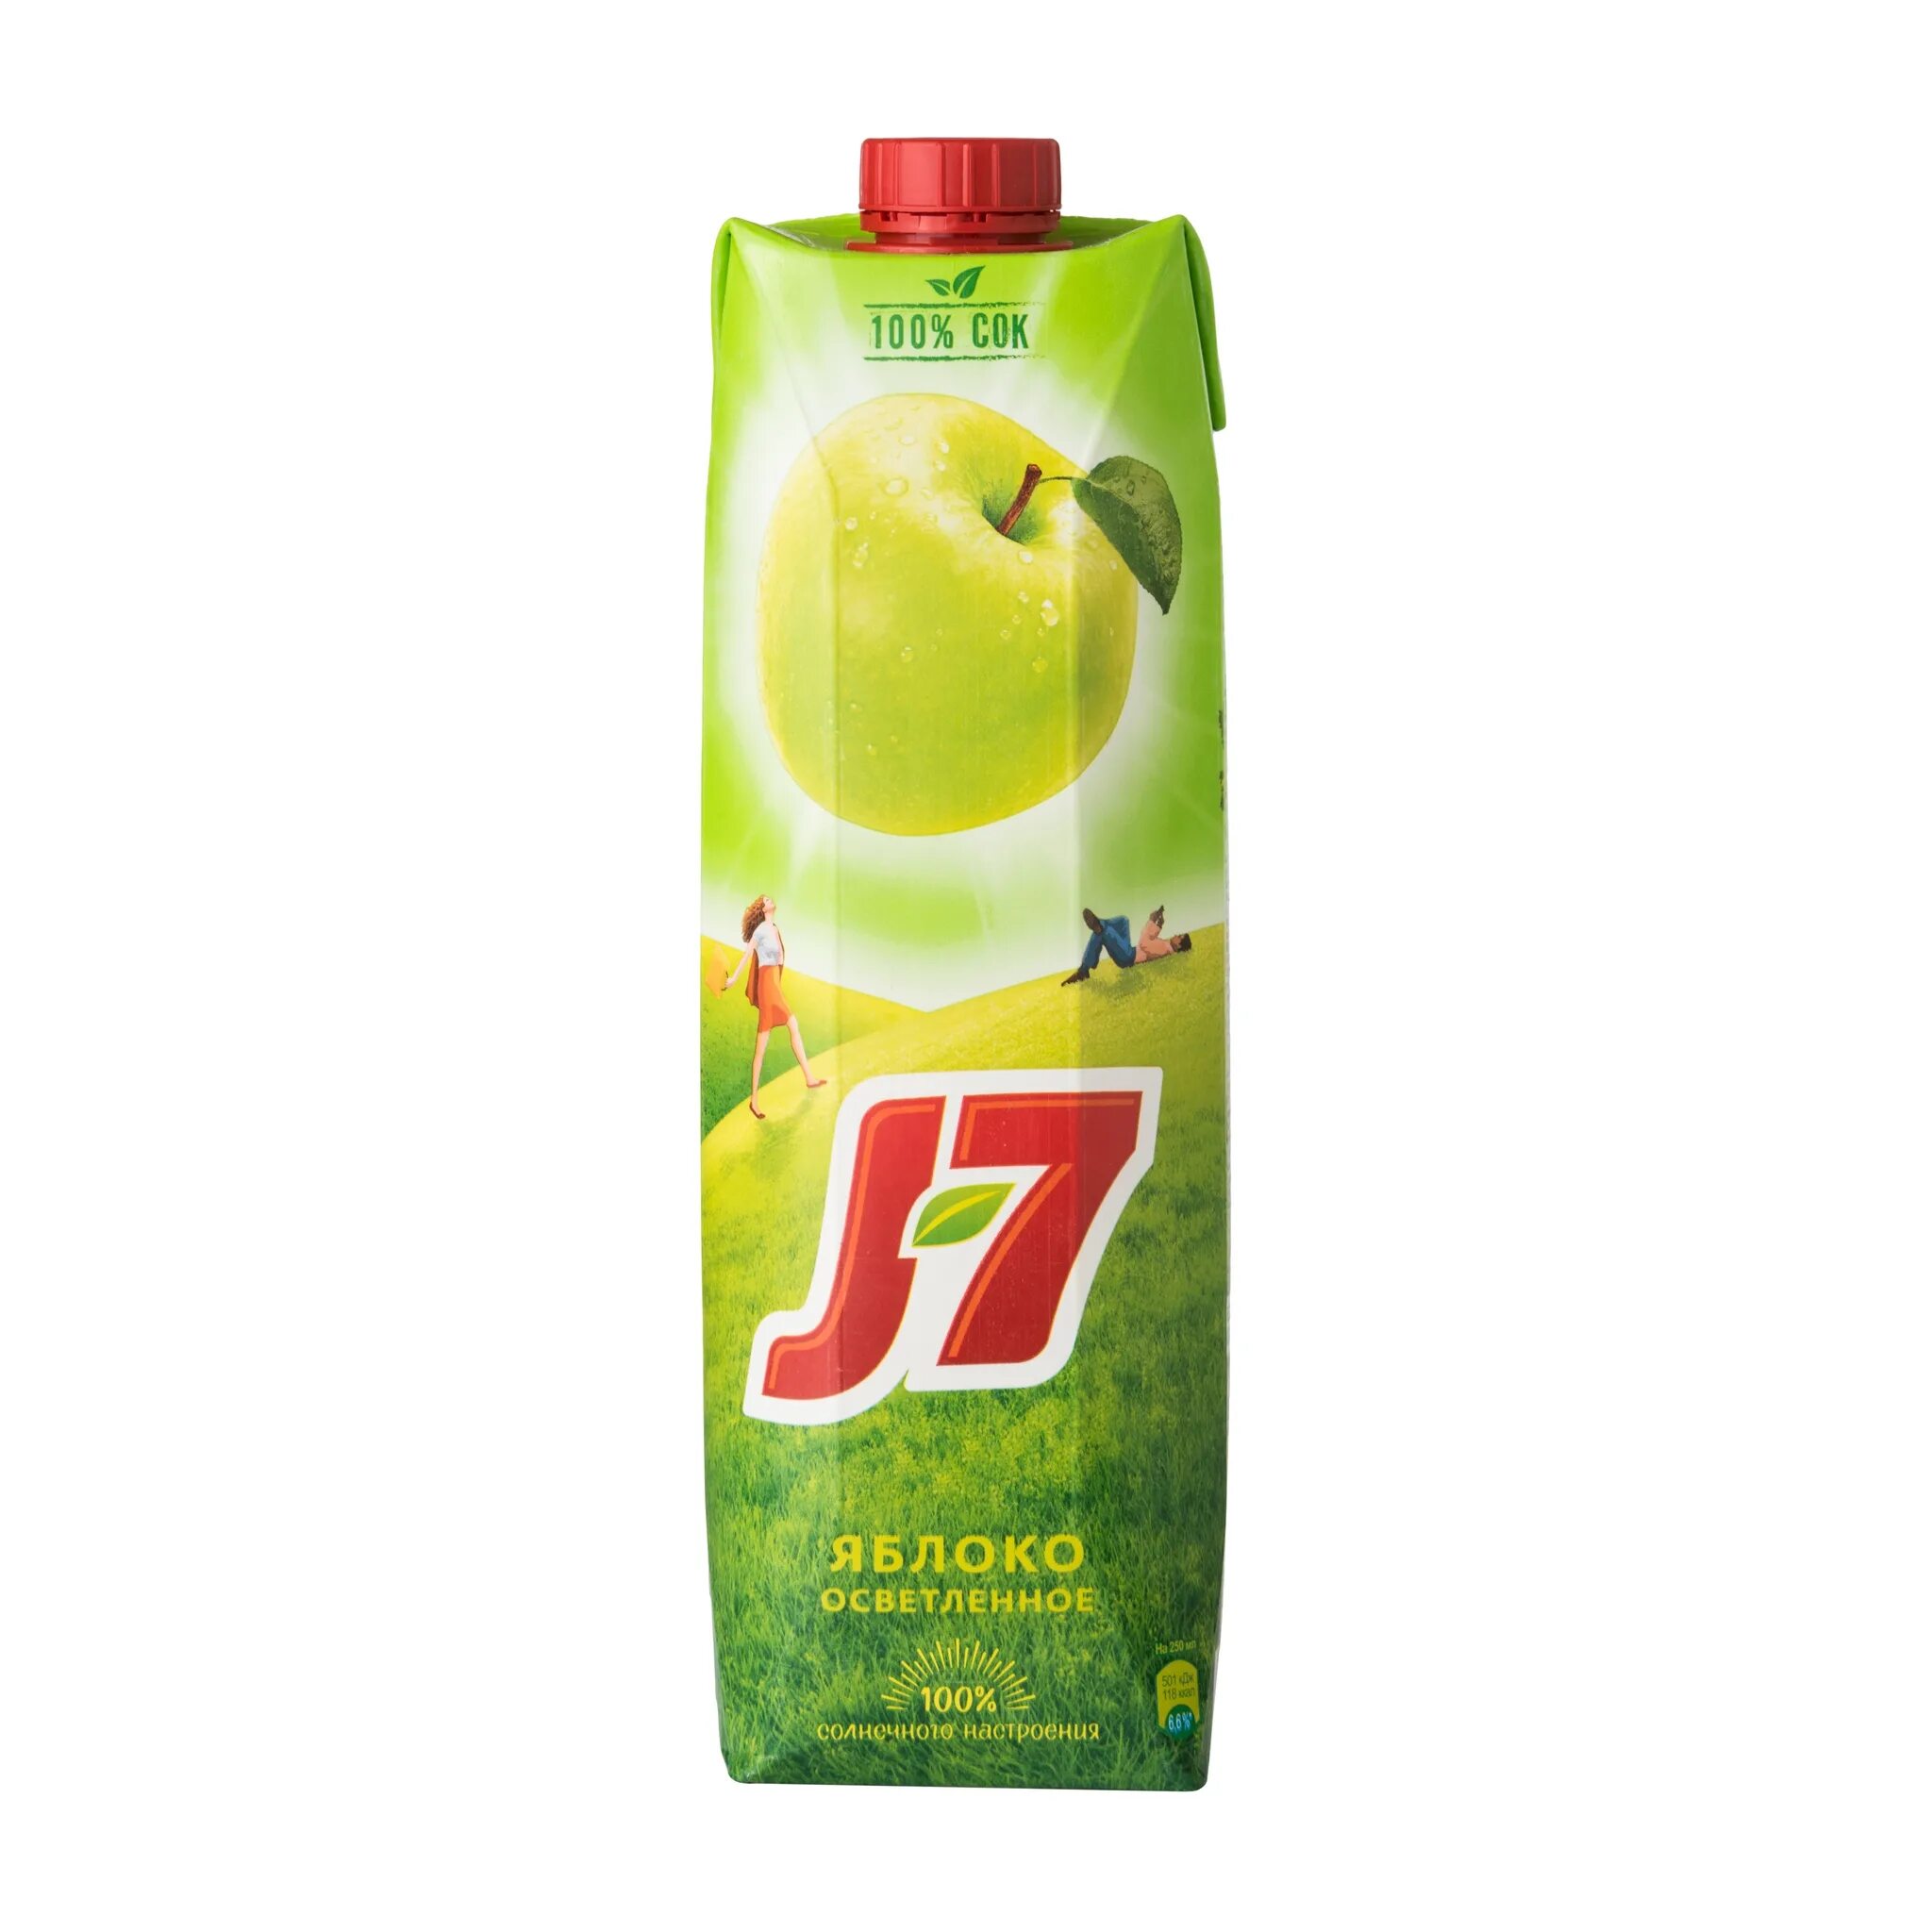 Яблоко 7 0 7 2. Сок j7 яблоко. Сок яблочный j7. J7 сок яблочный 0,97л. J7 сок j7 яблоко 0,2л 27 шт/уп.